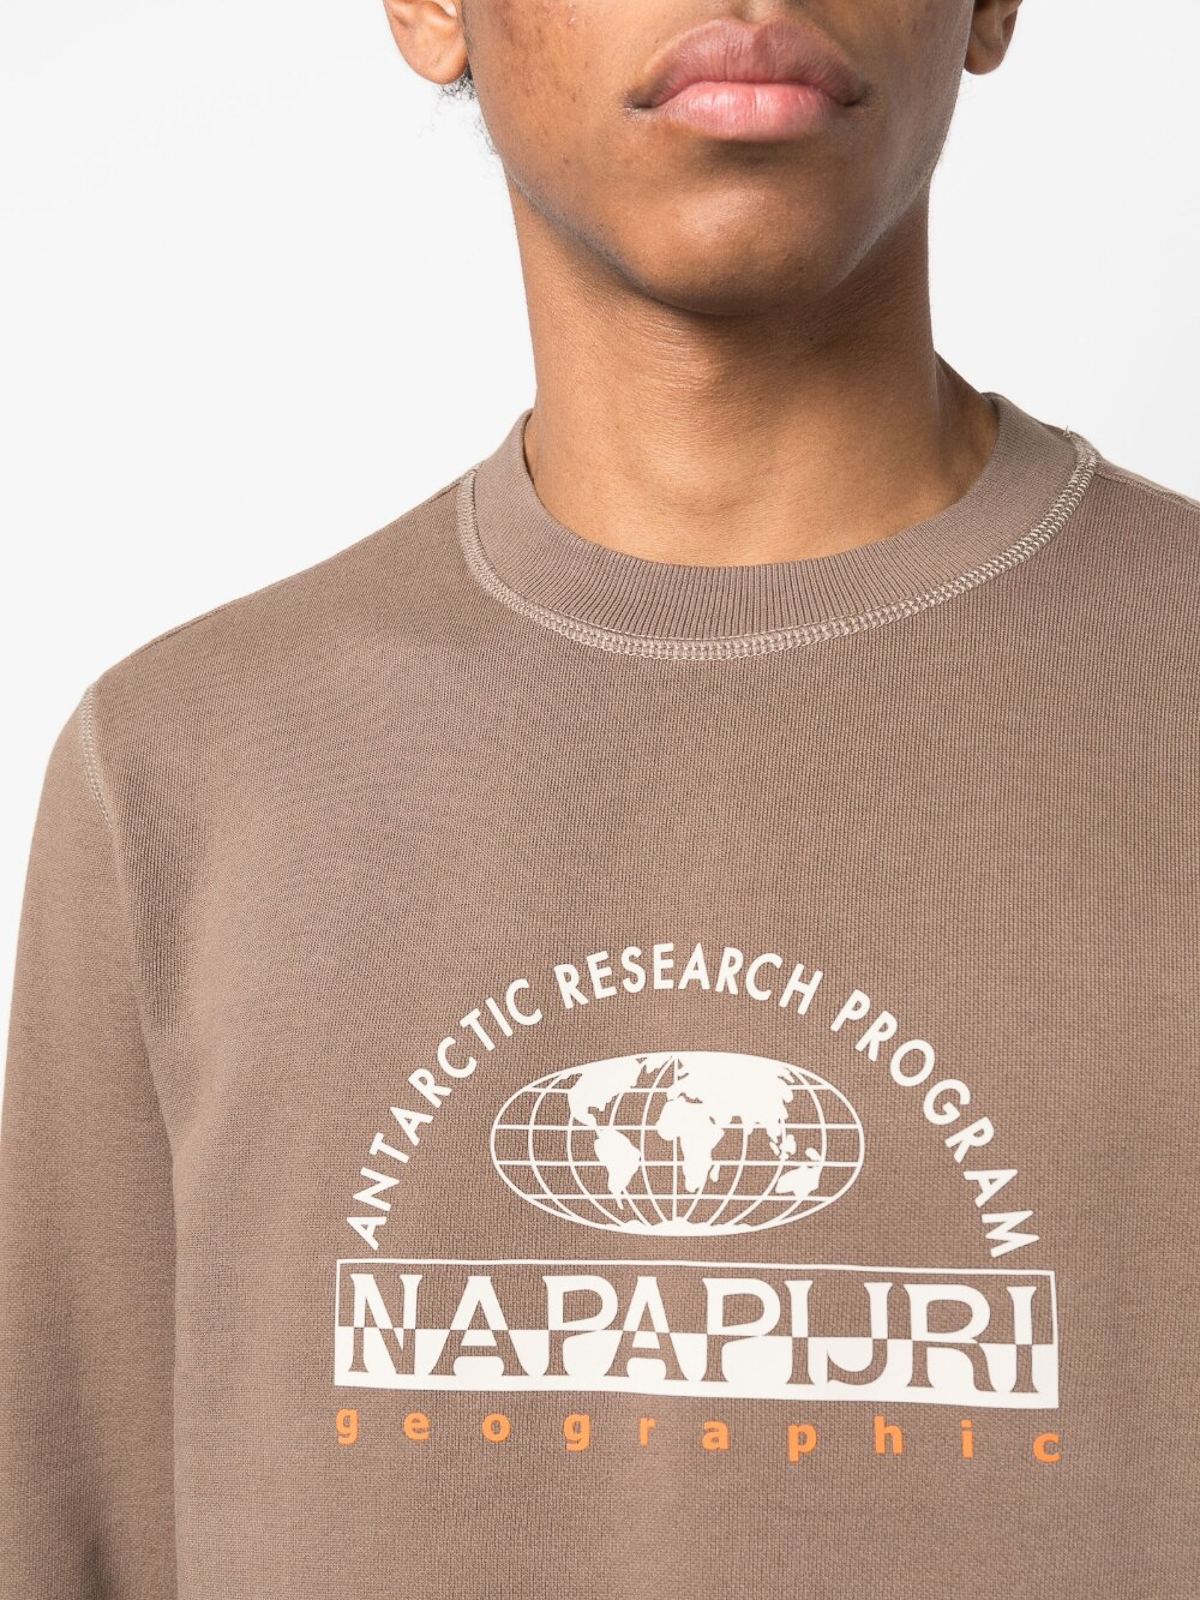 Uiterlijk bruiloft blik Shirts Napapijri - Logo cotton sweatshirt - NP0A4GZSW061